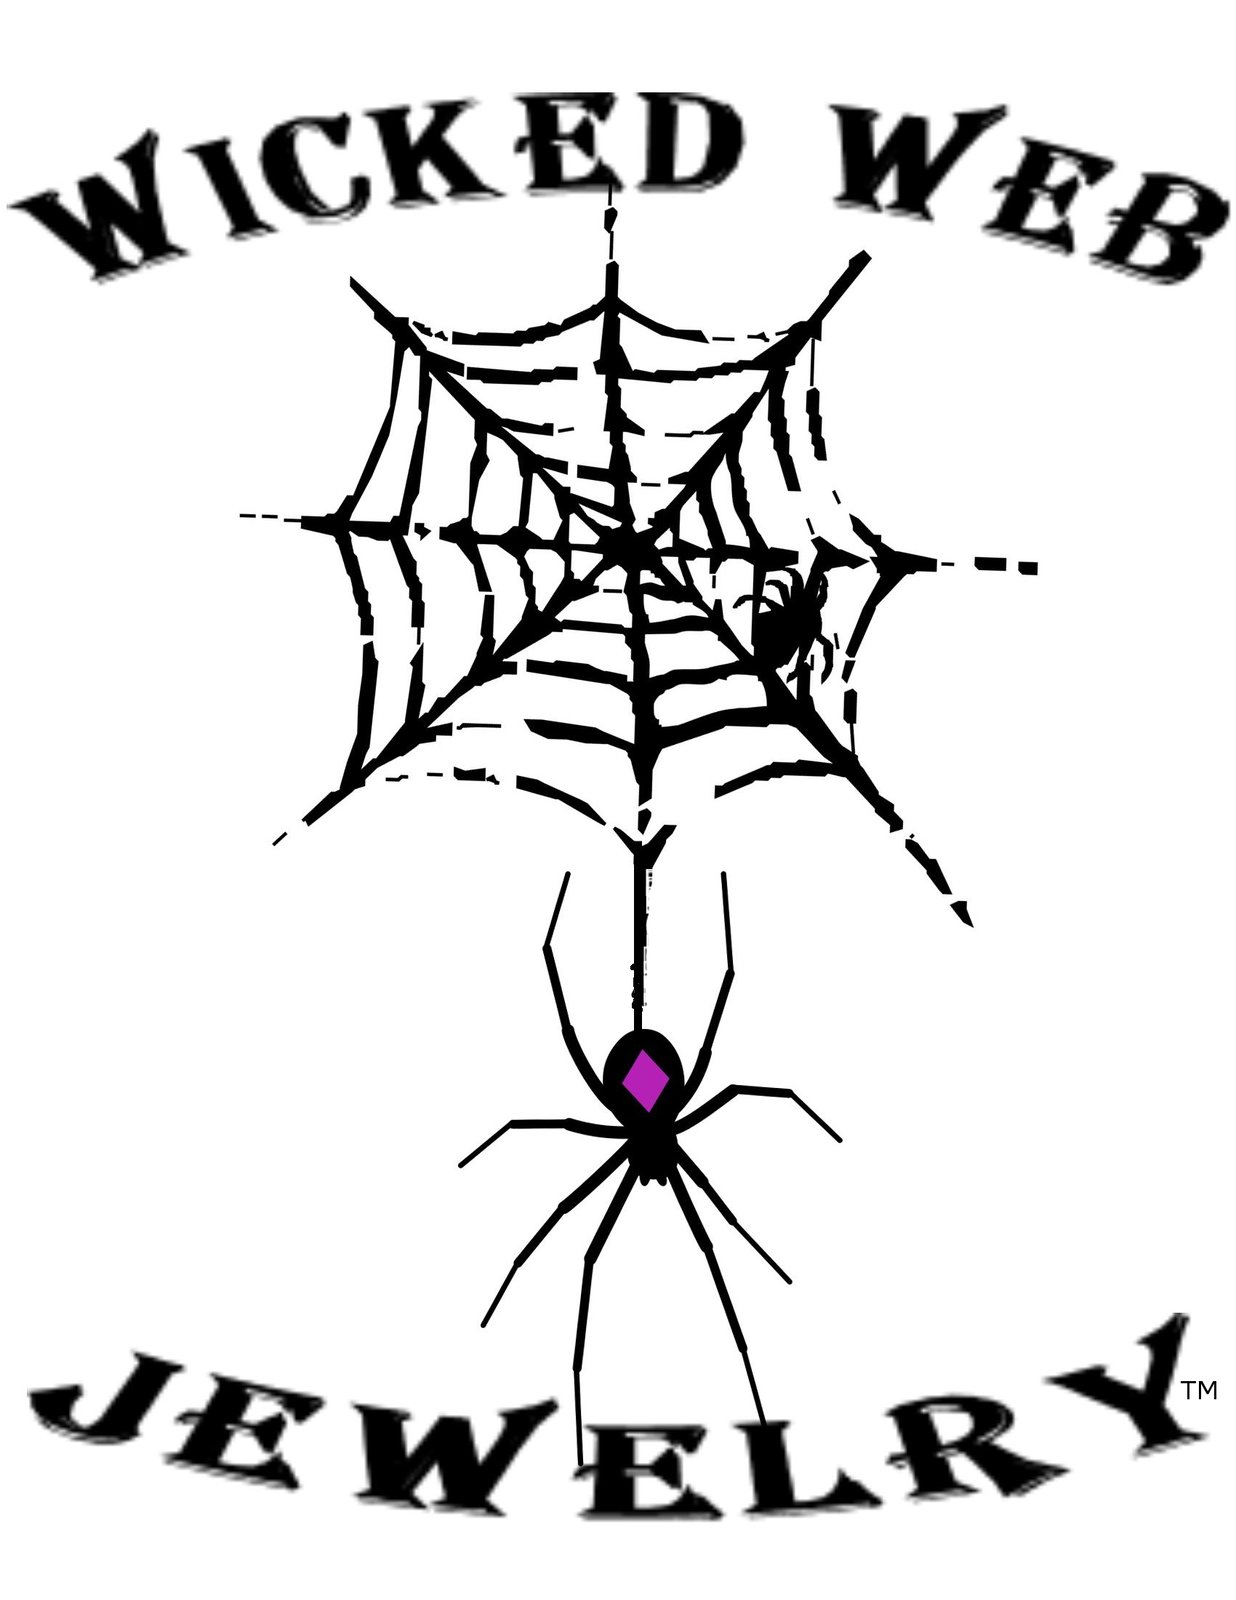 Wicked Web Jewelry